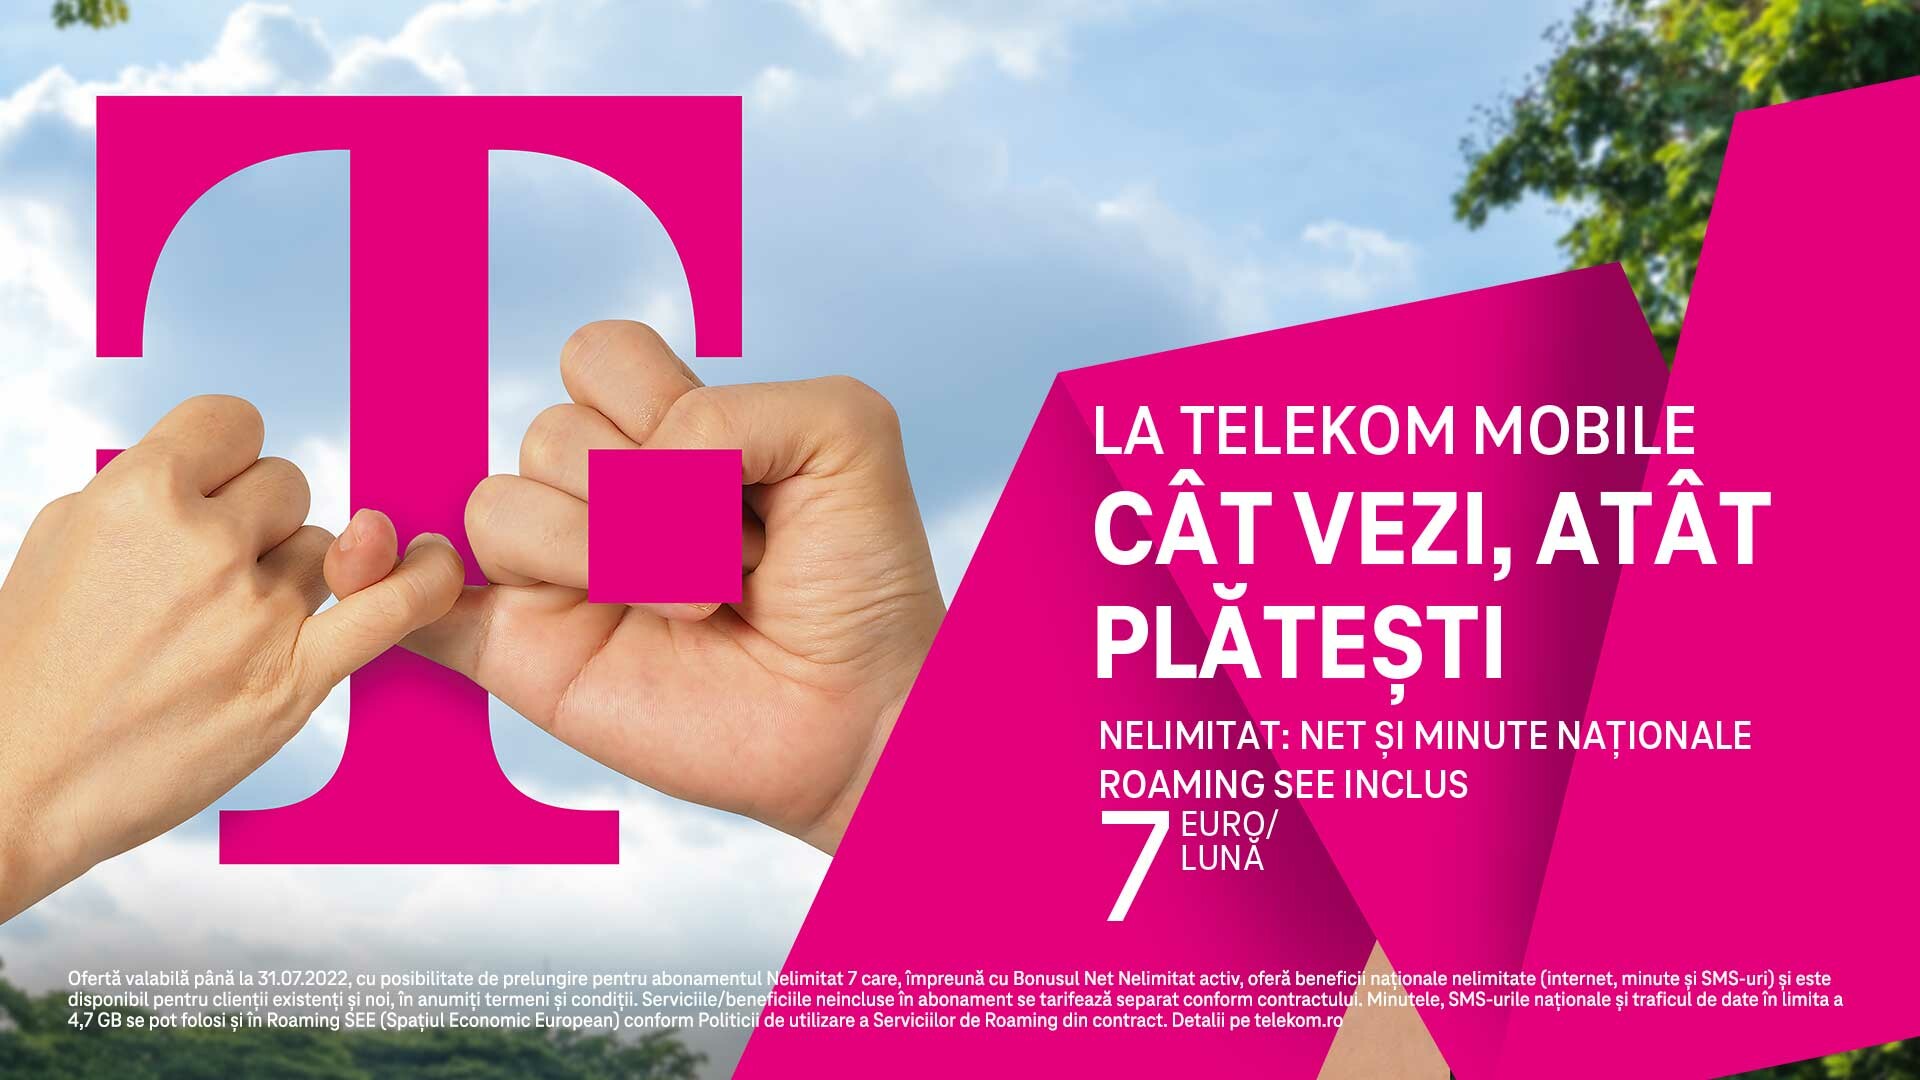 (P) La Telekom Mobile, CÂT VEZI, ATÂT PLATEȘTI, cu o singură condiție: NELIMITAT se referă doar la beneficii, nu și la preț